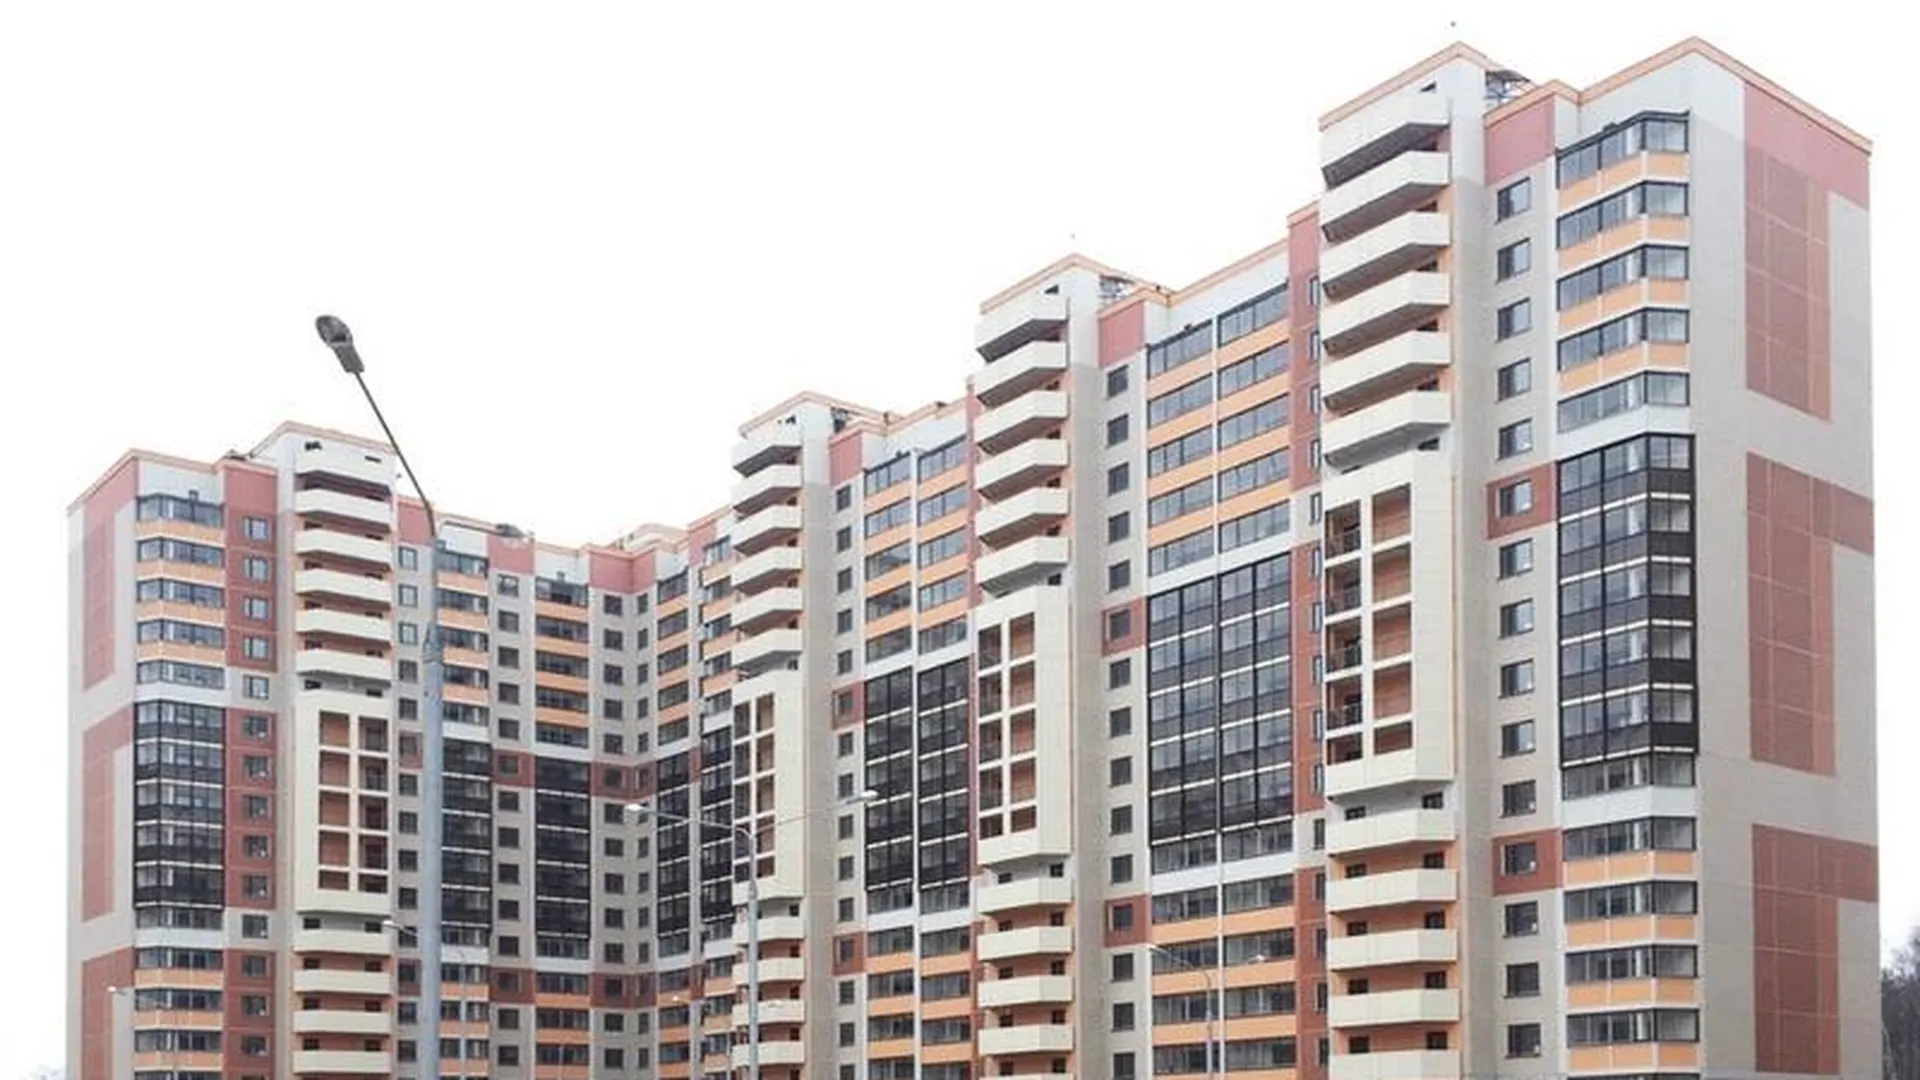 Семнадцатиэтажку на 332 квартиры построили в Балашихе